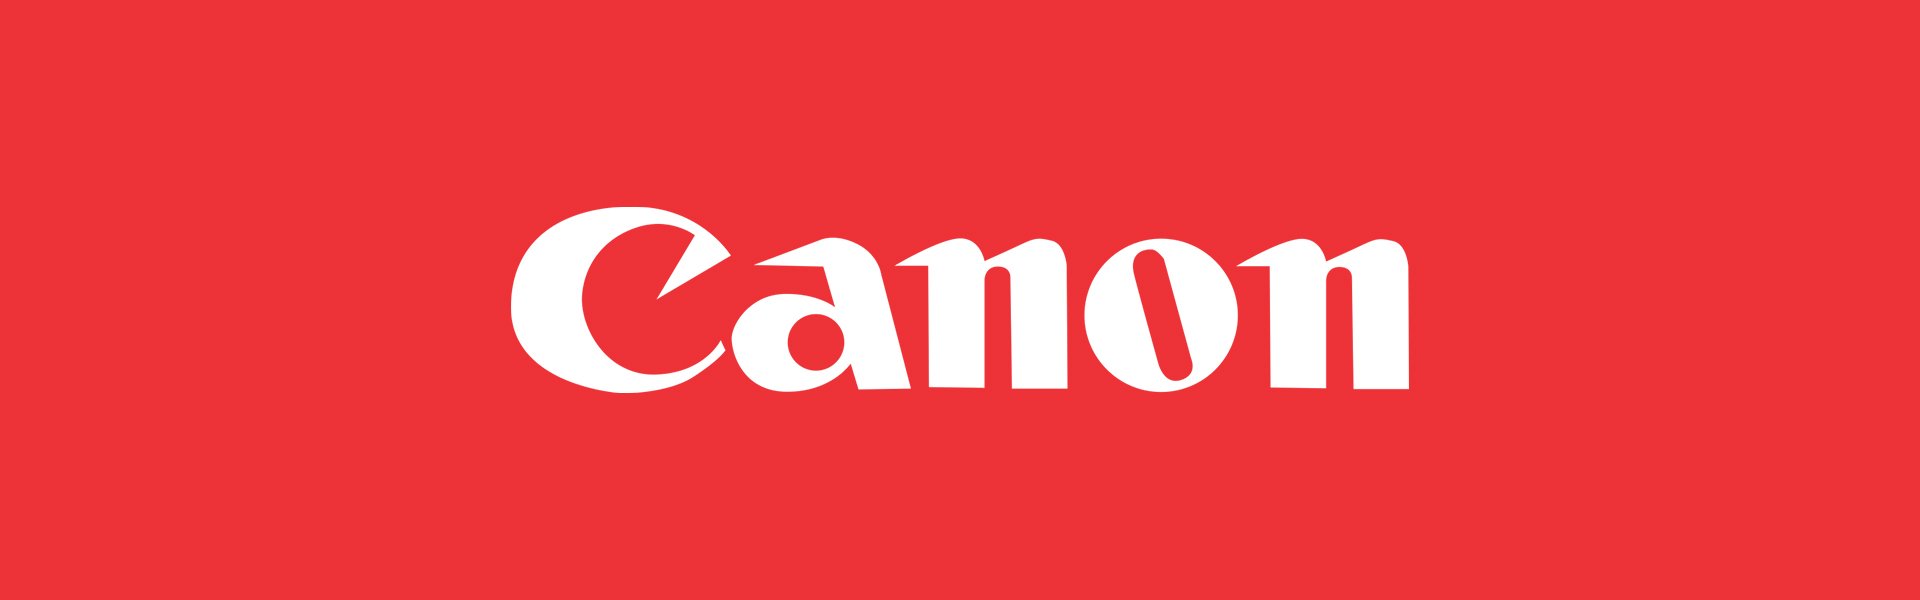 Canon EOS 750D Body Canon